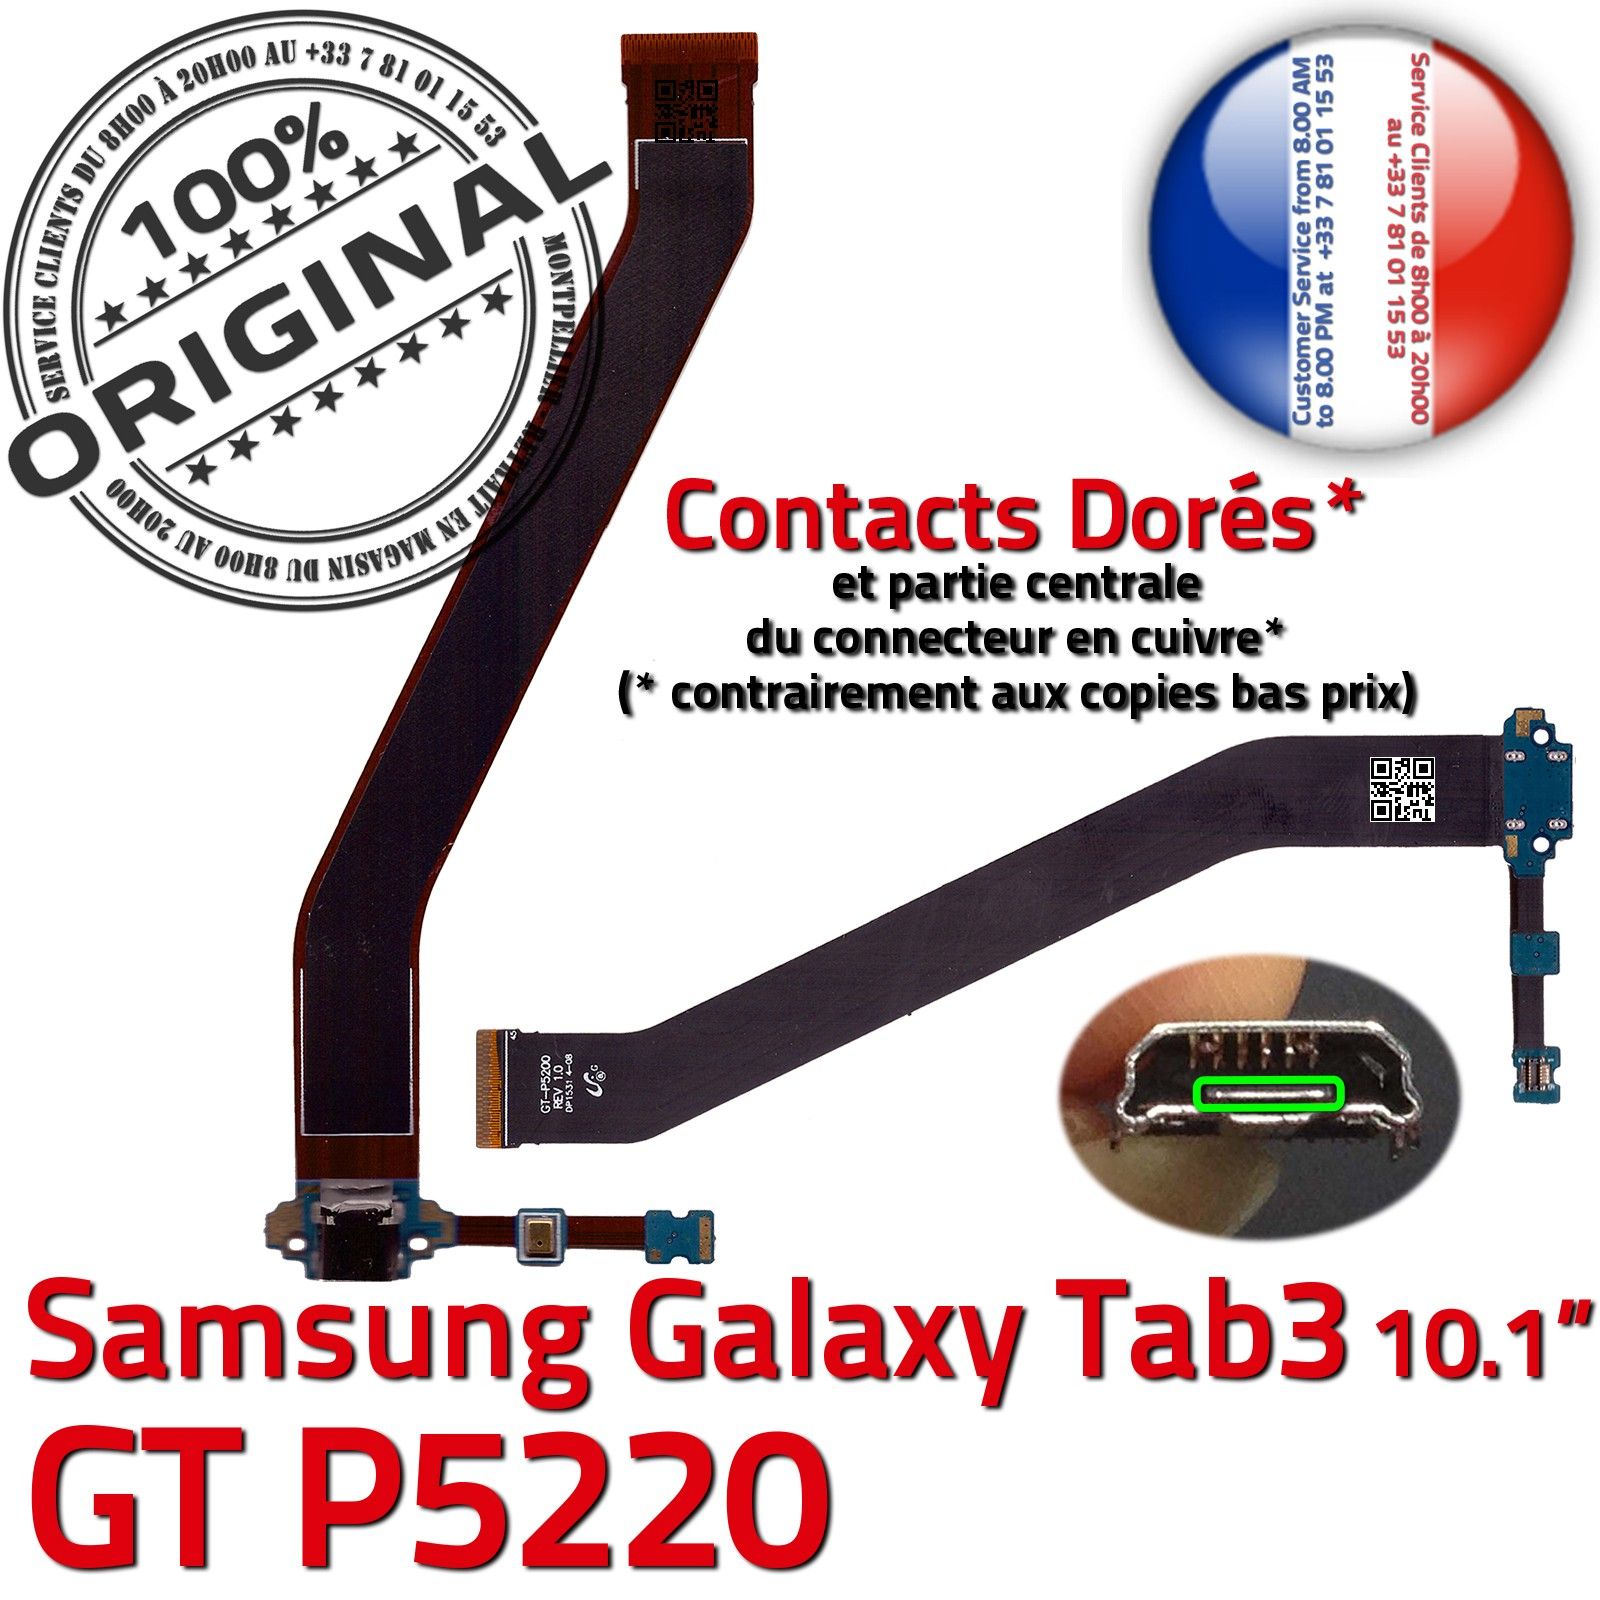 ORIGINAL Samsung Galaxy TAB3 GT-P5220 Connecteur de Charge Chargeur MicroUSB Nappe OFFICIELLE Qualité Contacts Dorés Réparation